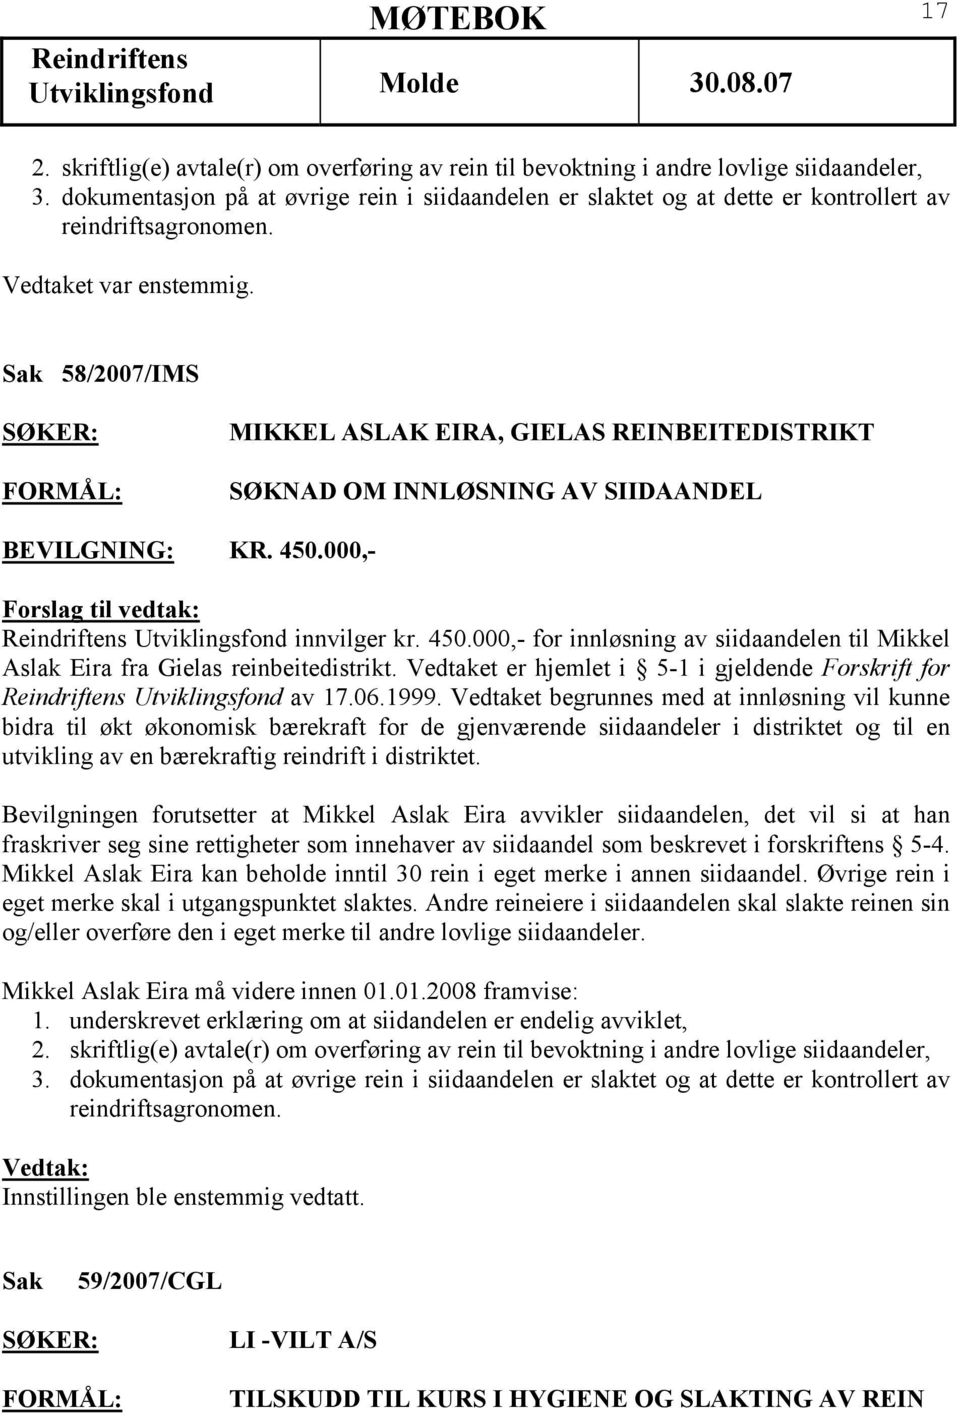 Sak 58/2007/IMS MIKKEL ASLAK EIRA, GIELAS REINBEITEDISTRIKT SØKNAD OM INNLØSNING AV SIIDAANDEL BEVILGNING: KR. 450.